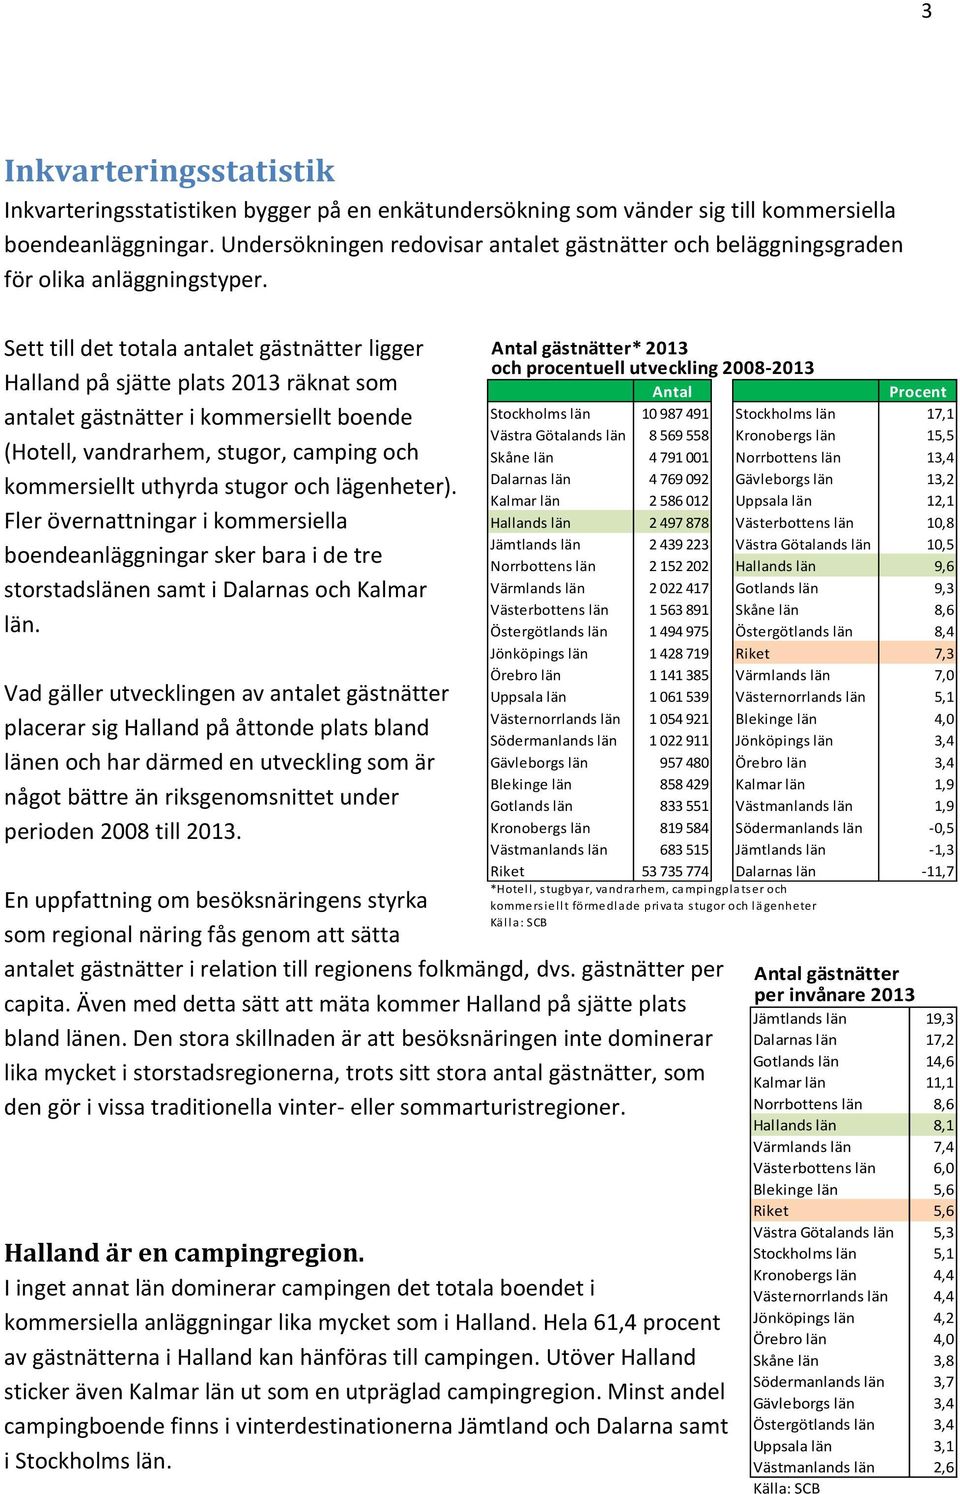 Sett till det totala antalet gästnätter ligger Halland på sjätte plats 2013 räknat som antalet gästnätter i kommersiellt boende (Hotell, vandrarhem, stugor, camping och kommersiellt uthyrda stugor